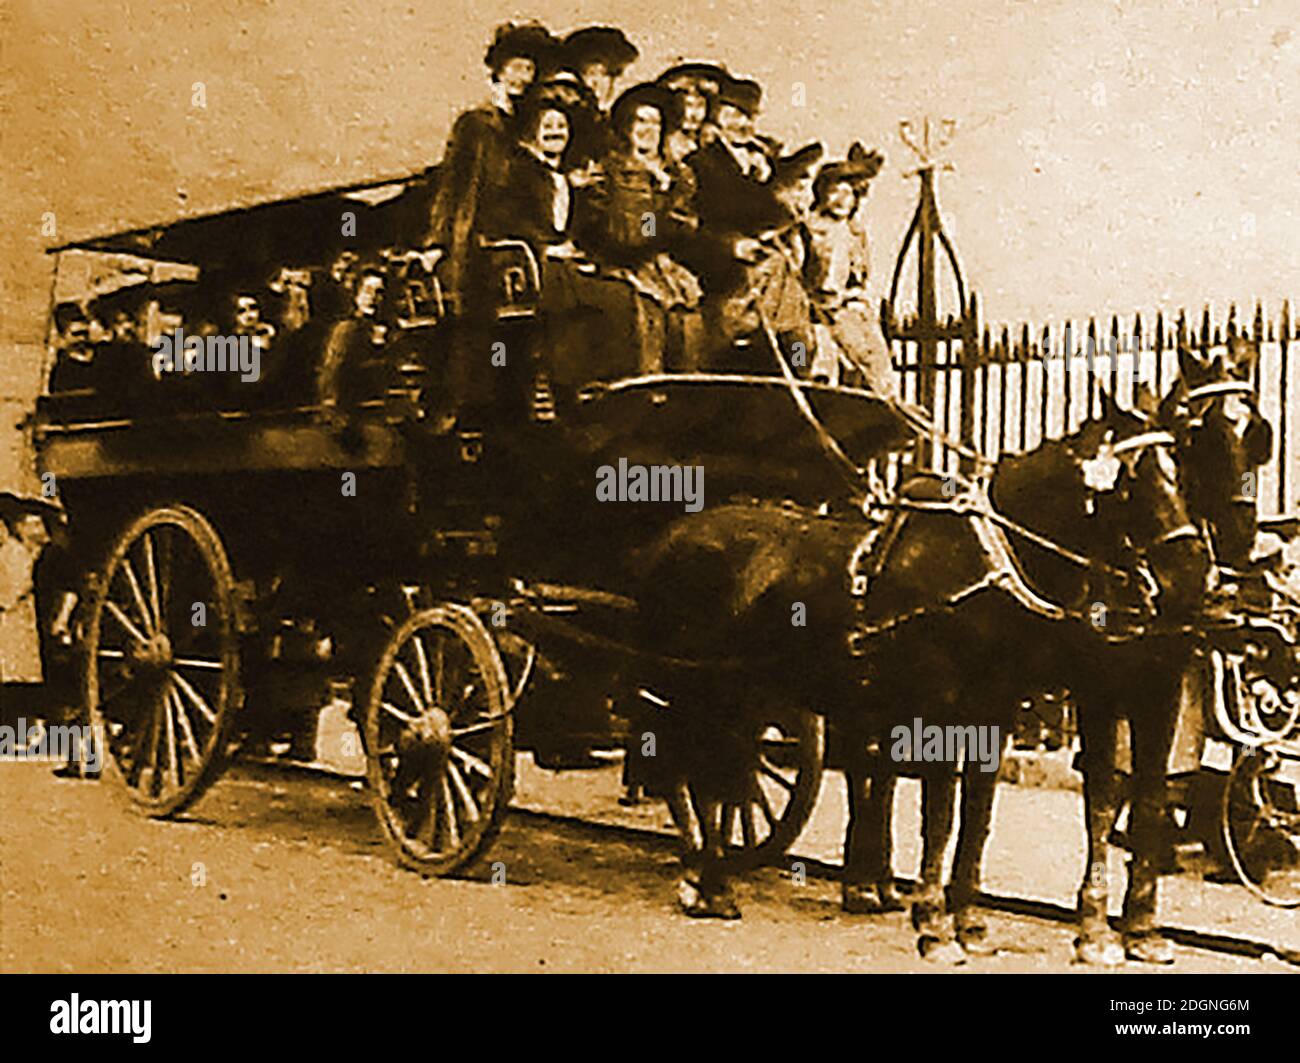 Una vieja fotografía de sepia temprana de mujeres que toman un viaje en un viejo autobús de excursión de trabajo de las mujeres tiradas por caballos conocido entonces Como un Horsefrake o un caballo-tirado break Foto de stock